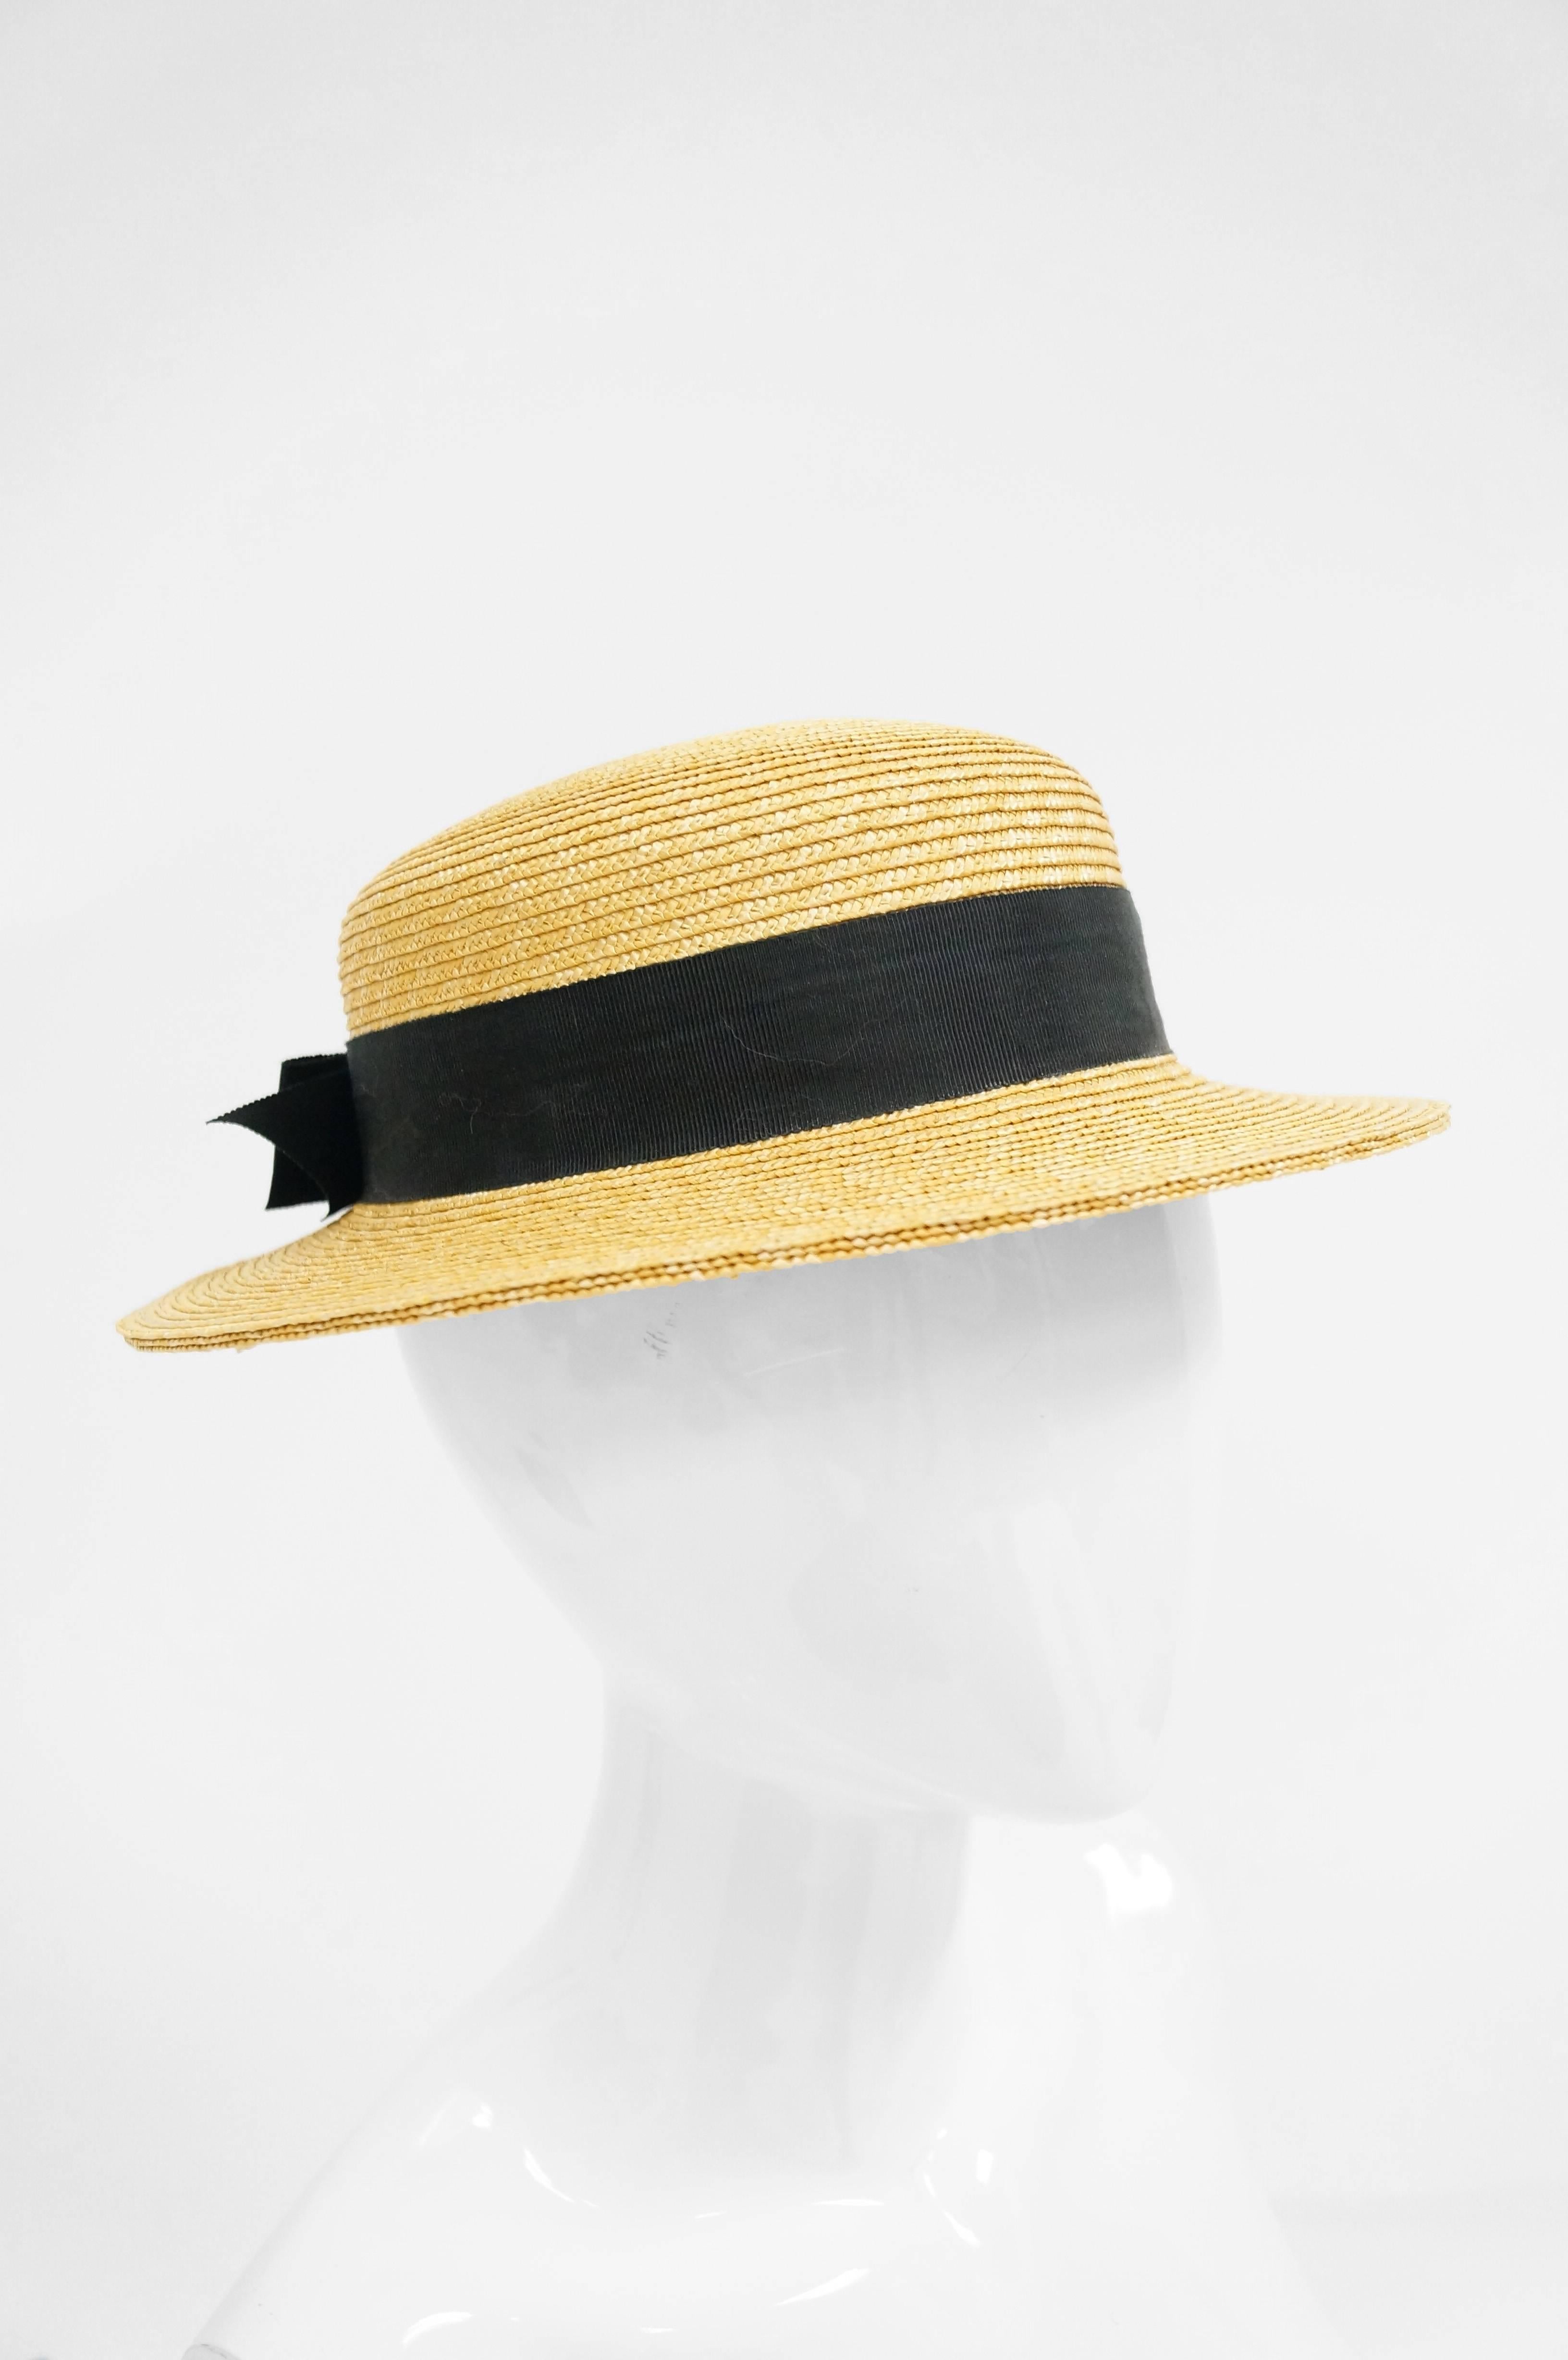 Women's or Men's Rare 1980s Yves Saint Laurent Straw Boater Hat